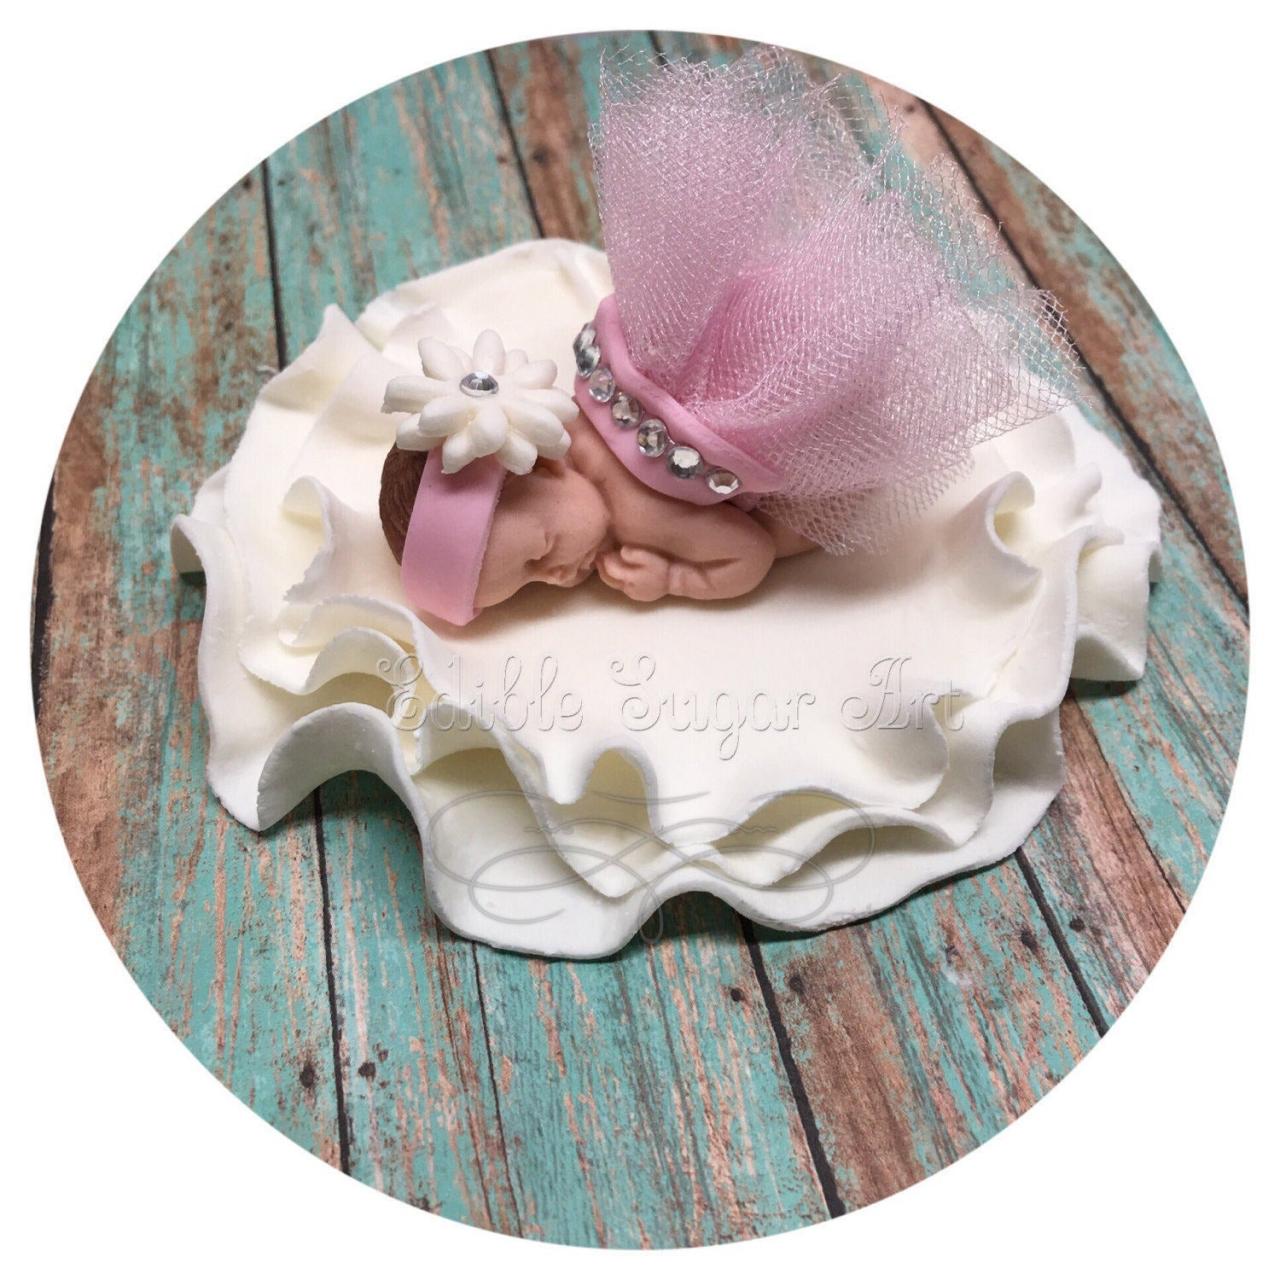 Vintage Baby Shower Shabby Chic Baby Shower Nursery Decor Cakepink Tutu Topper Fondant Baby Tutu Cake Topper Fondant Cake Topper Baby Girl